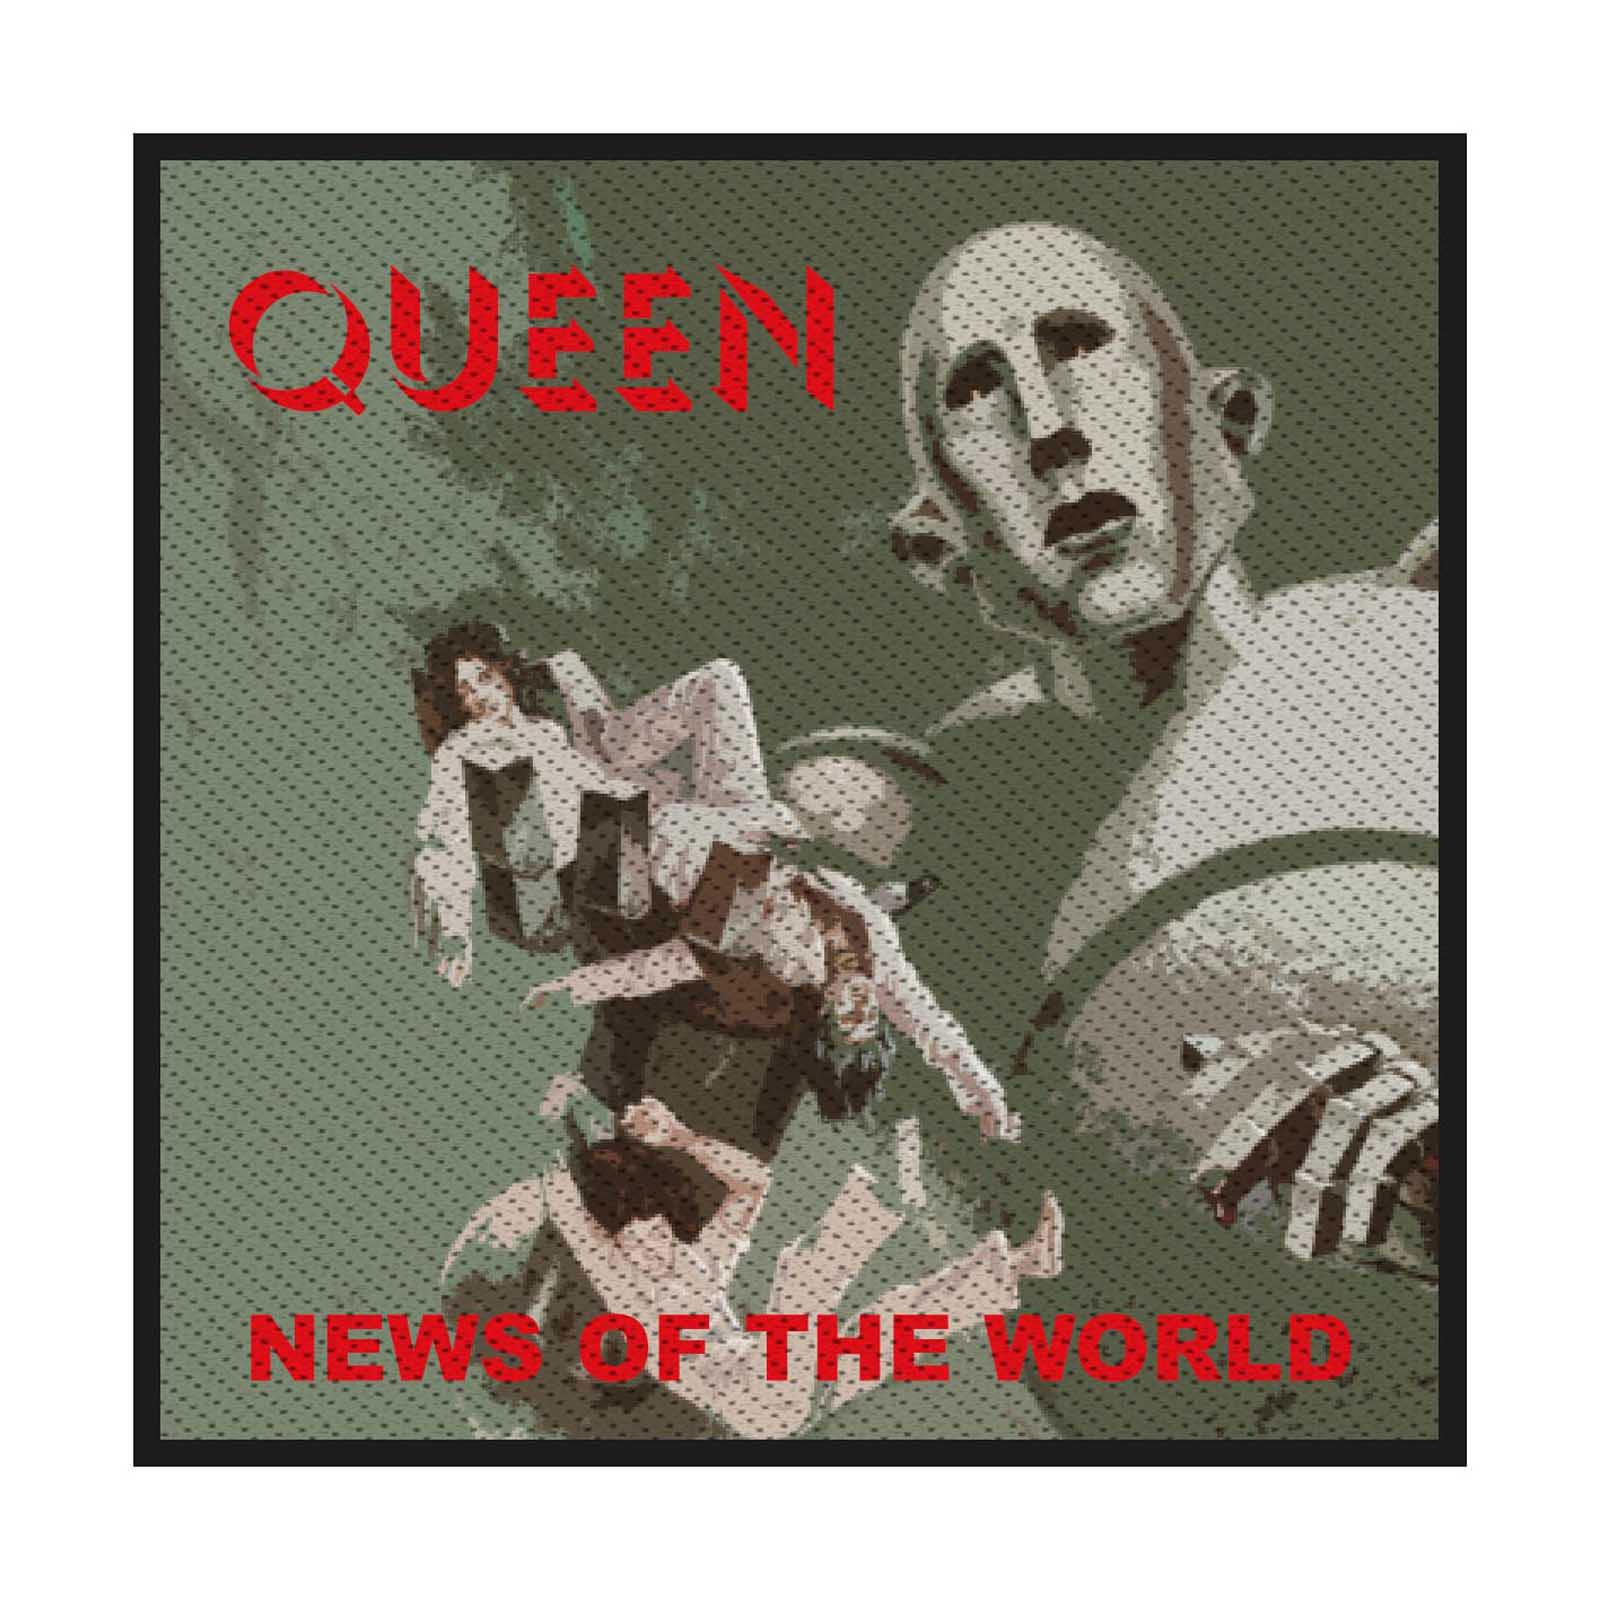 (クイーン) Queen オフィシャル商品 News Of The World ワッペン スタンダード パッチ 【海外通販】